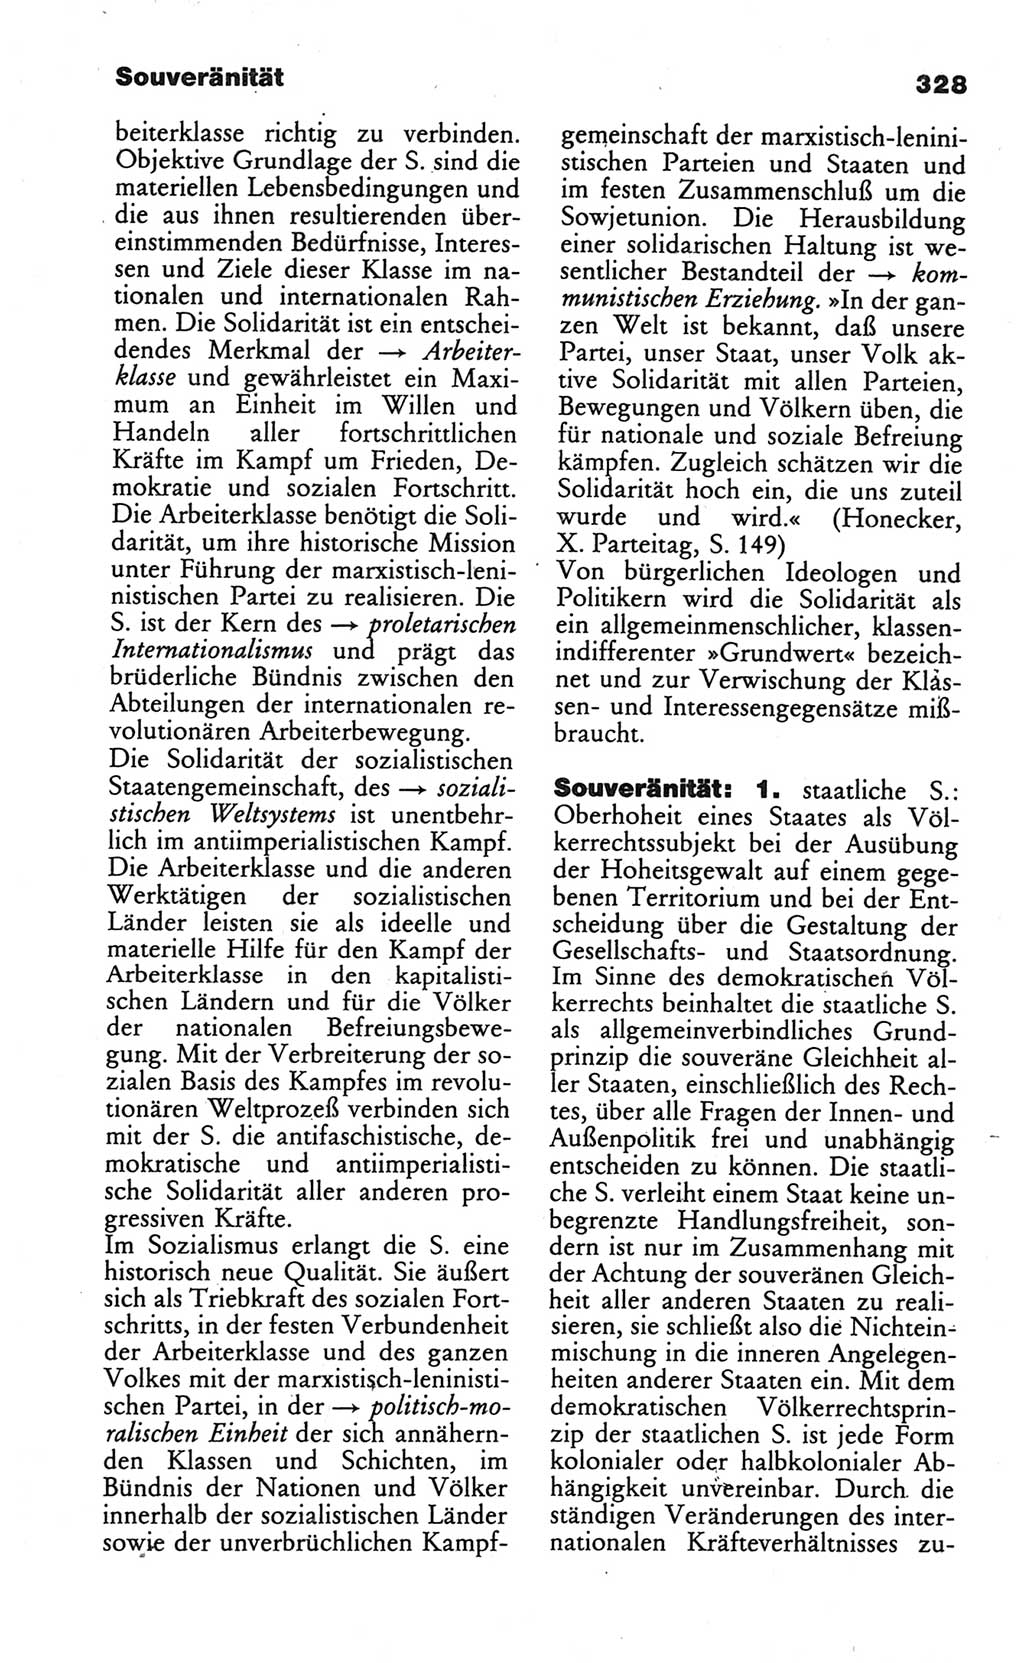 Wörterbuch des wissenschaftlichen Kommunismus [Deutsche Demokratische Republik (DDR)] 1984, Seite 328 (Wb. wiss. Komm. DDR 1984, S. 328)